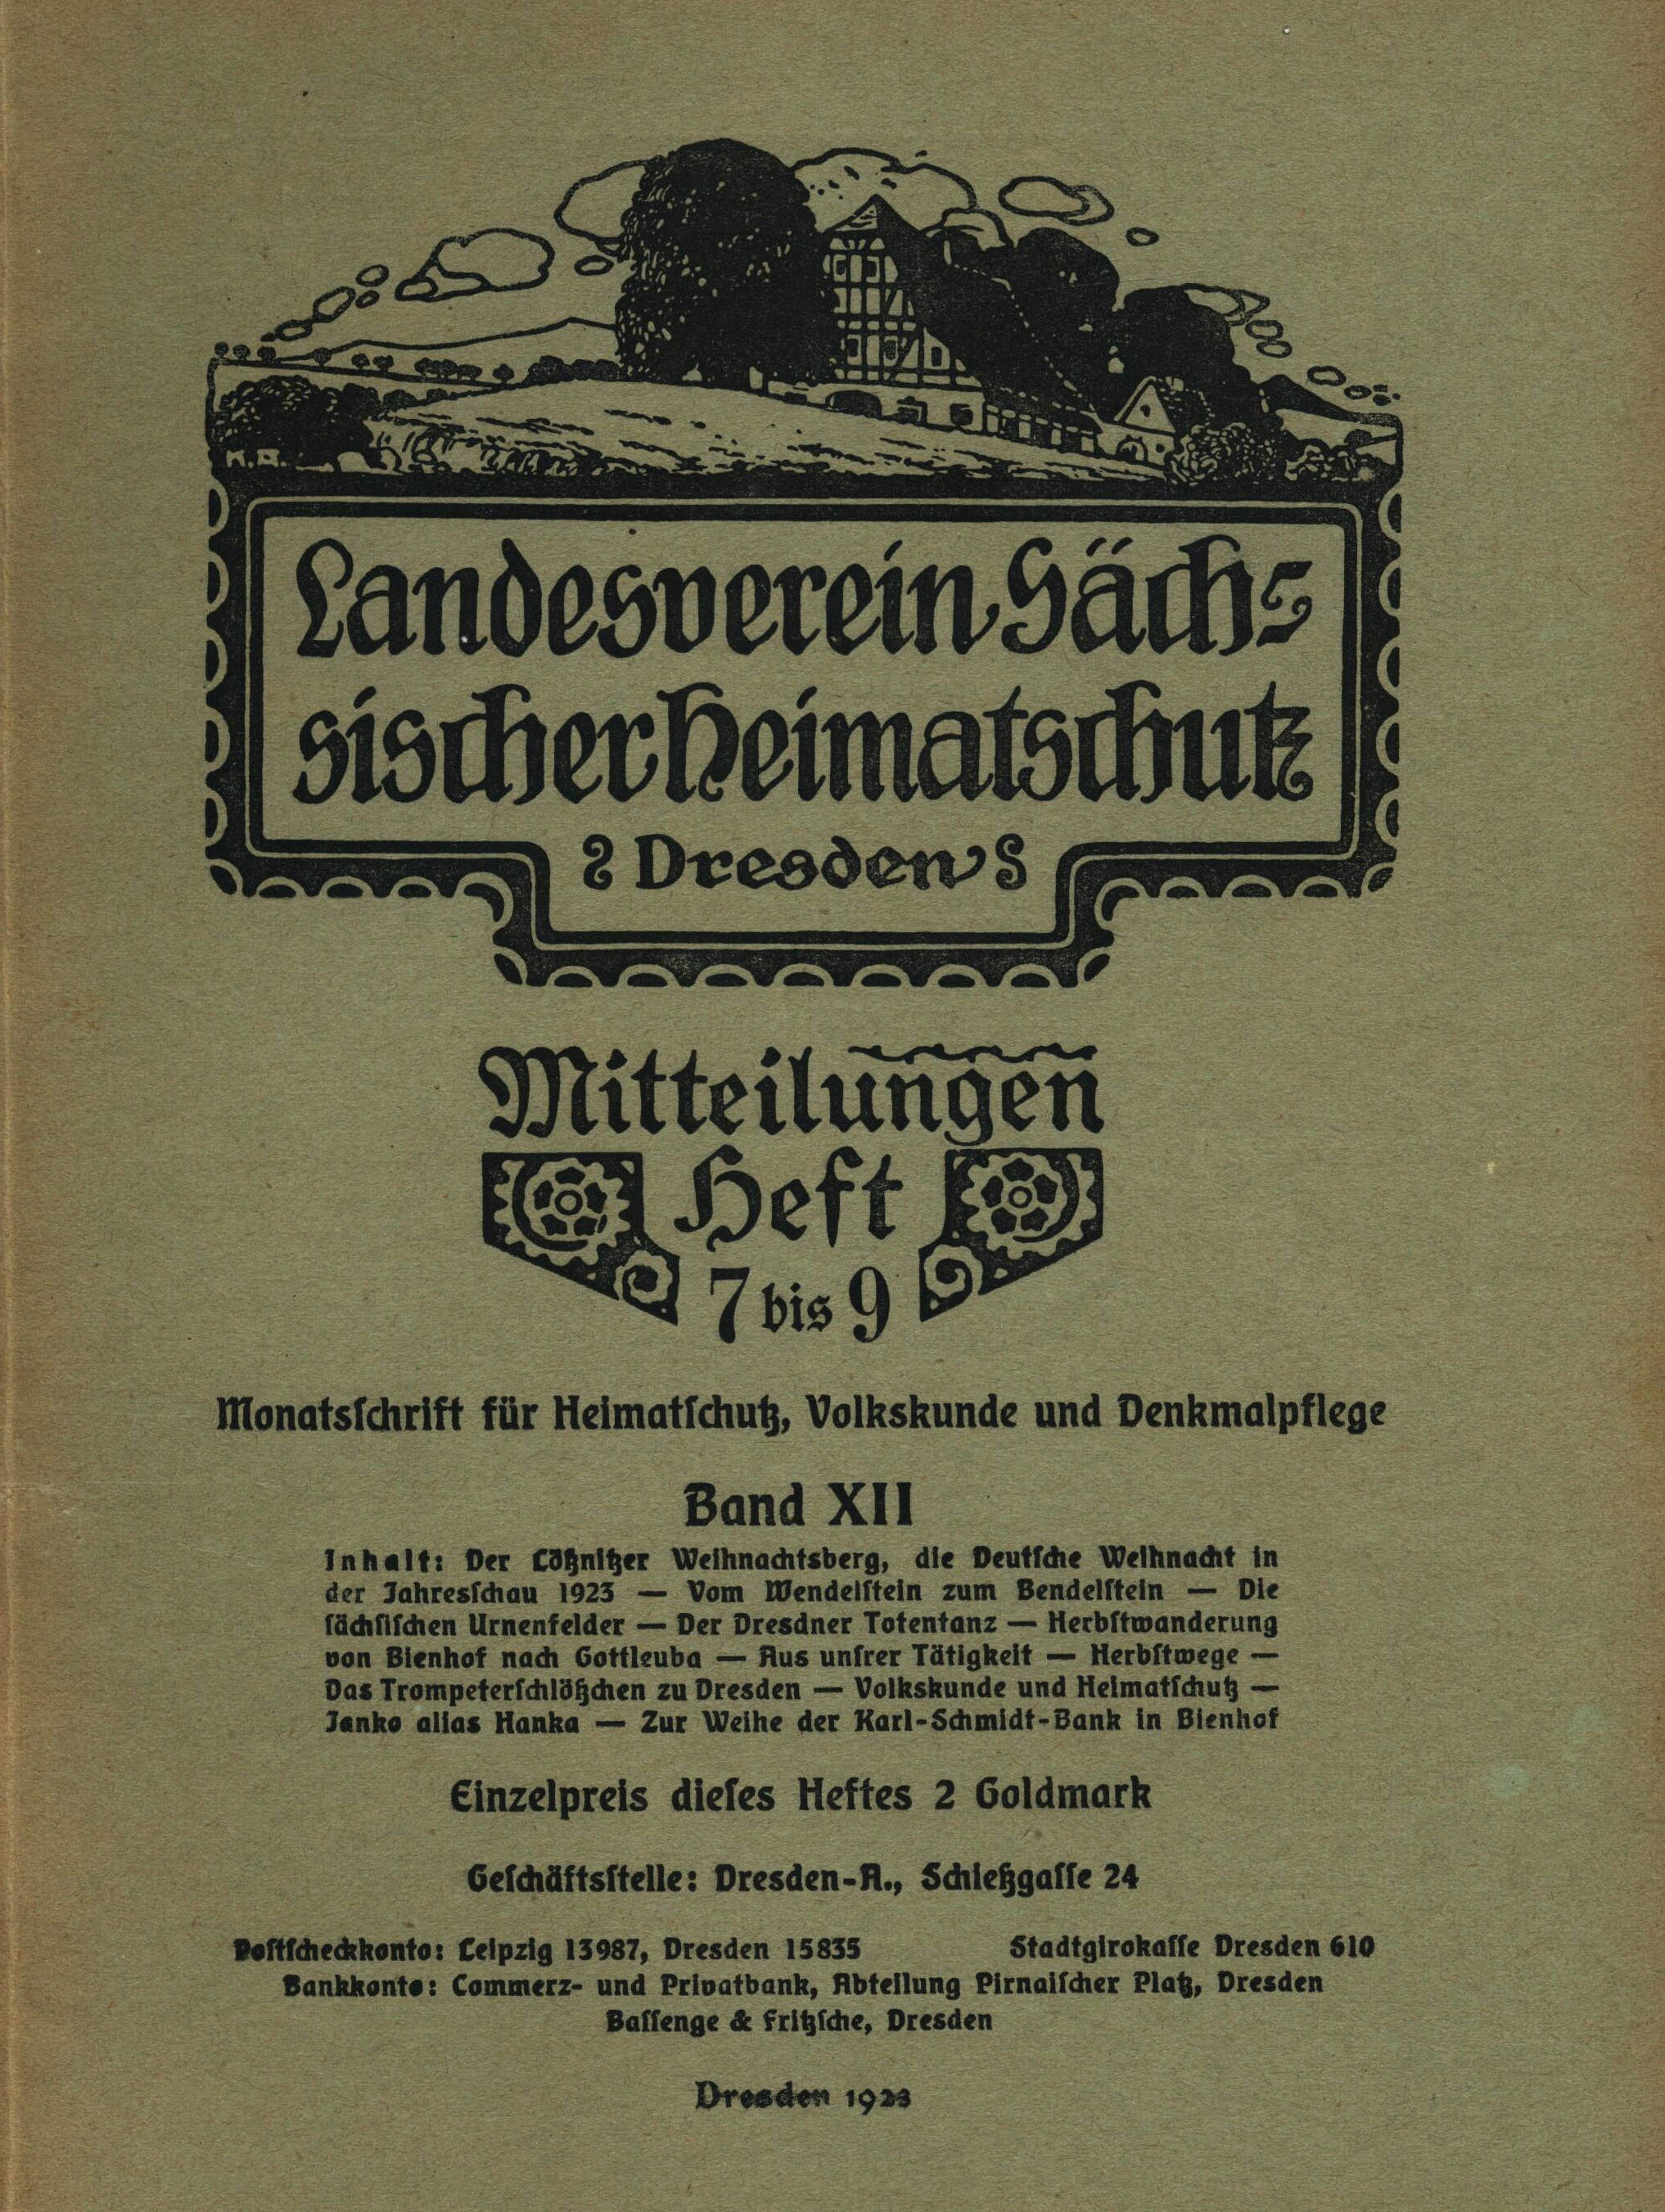 Landesverein Sächsischer Heimatschutz — Mitteilungen Band XII, Heft 7-9